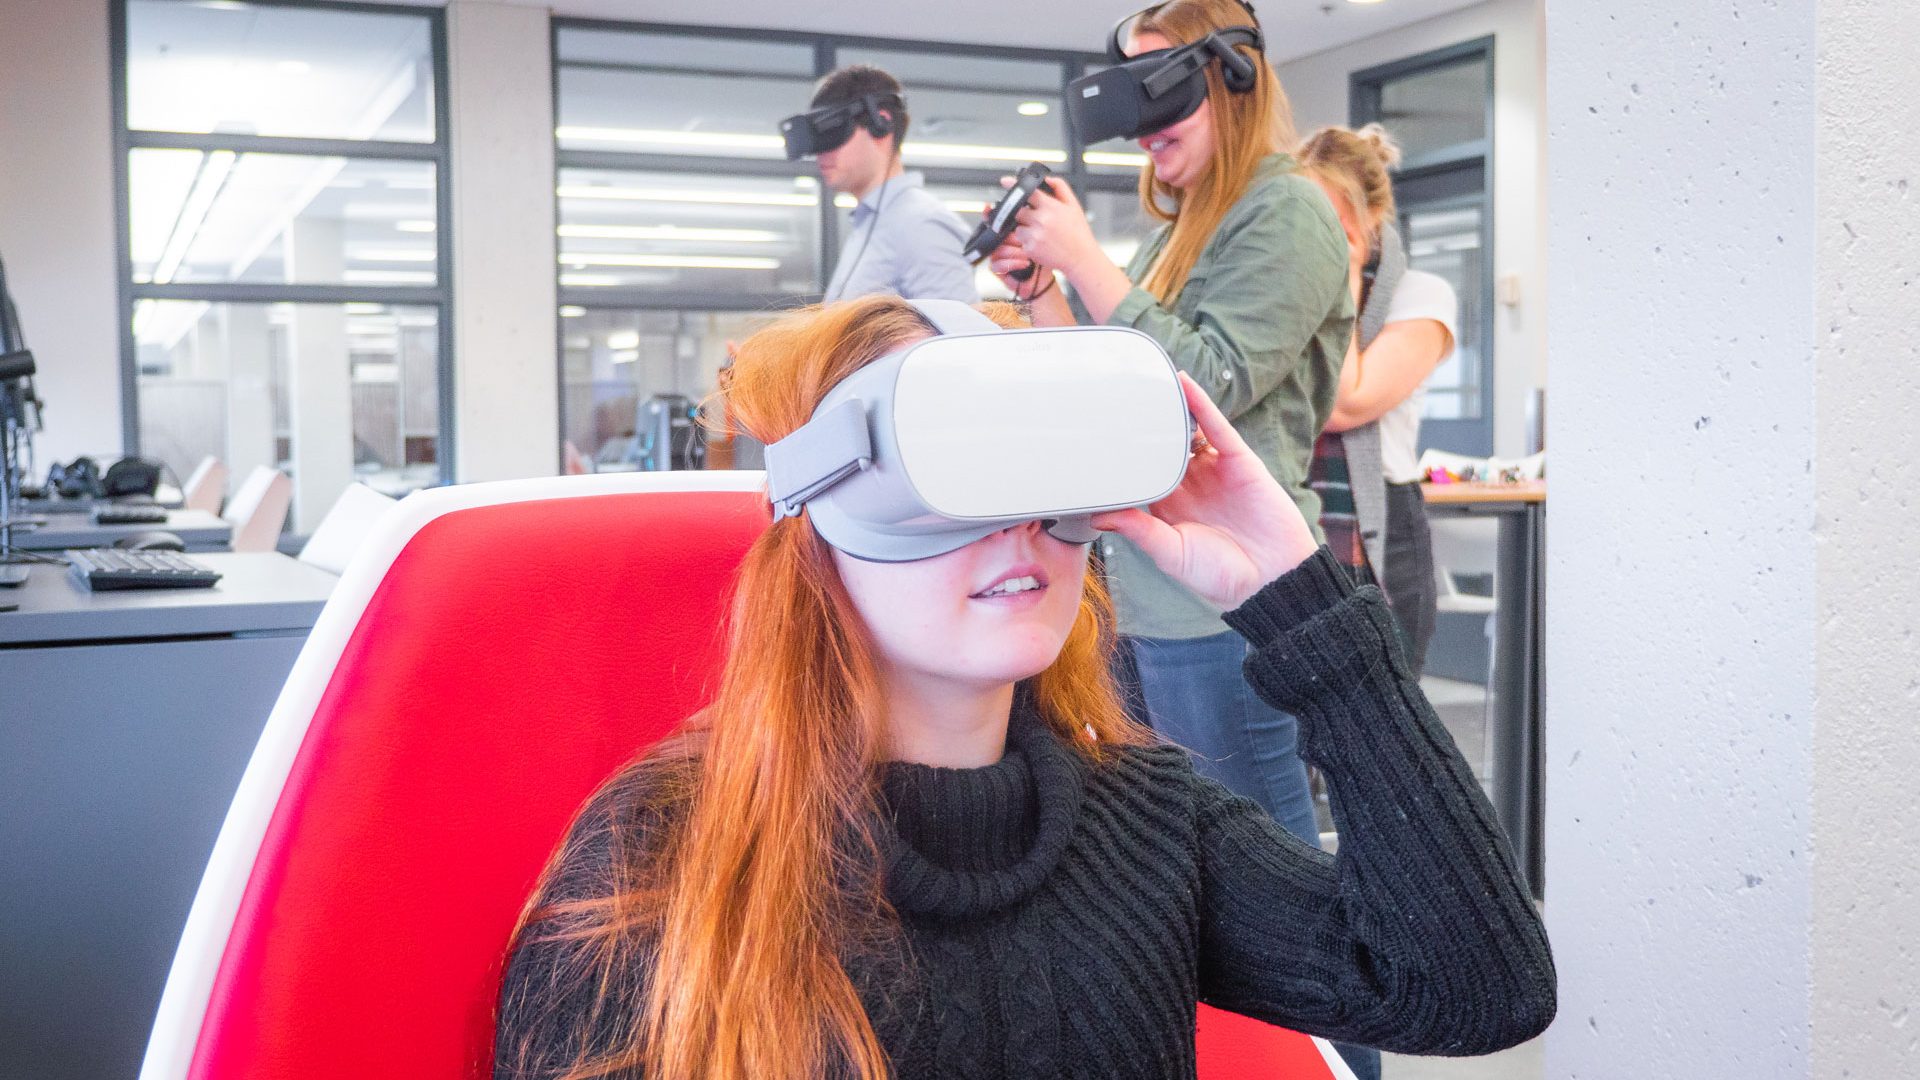 Les casques de réalité virtuelle font vivre des expériences immersives et enrichissantes